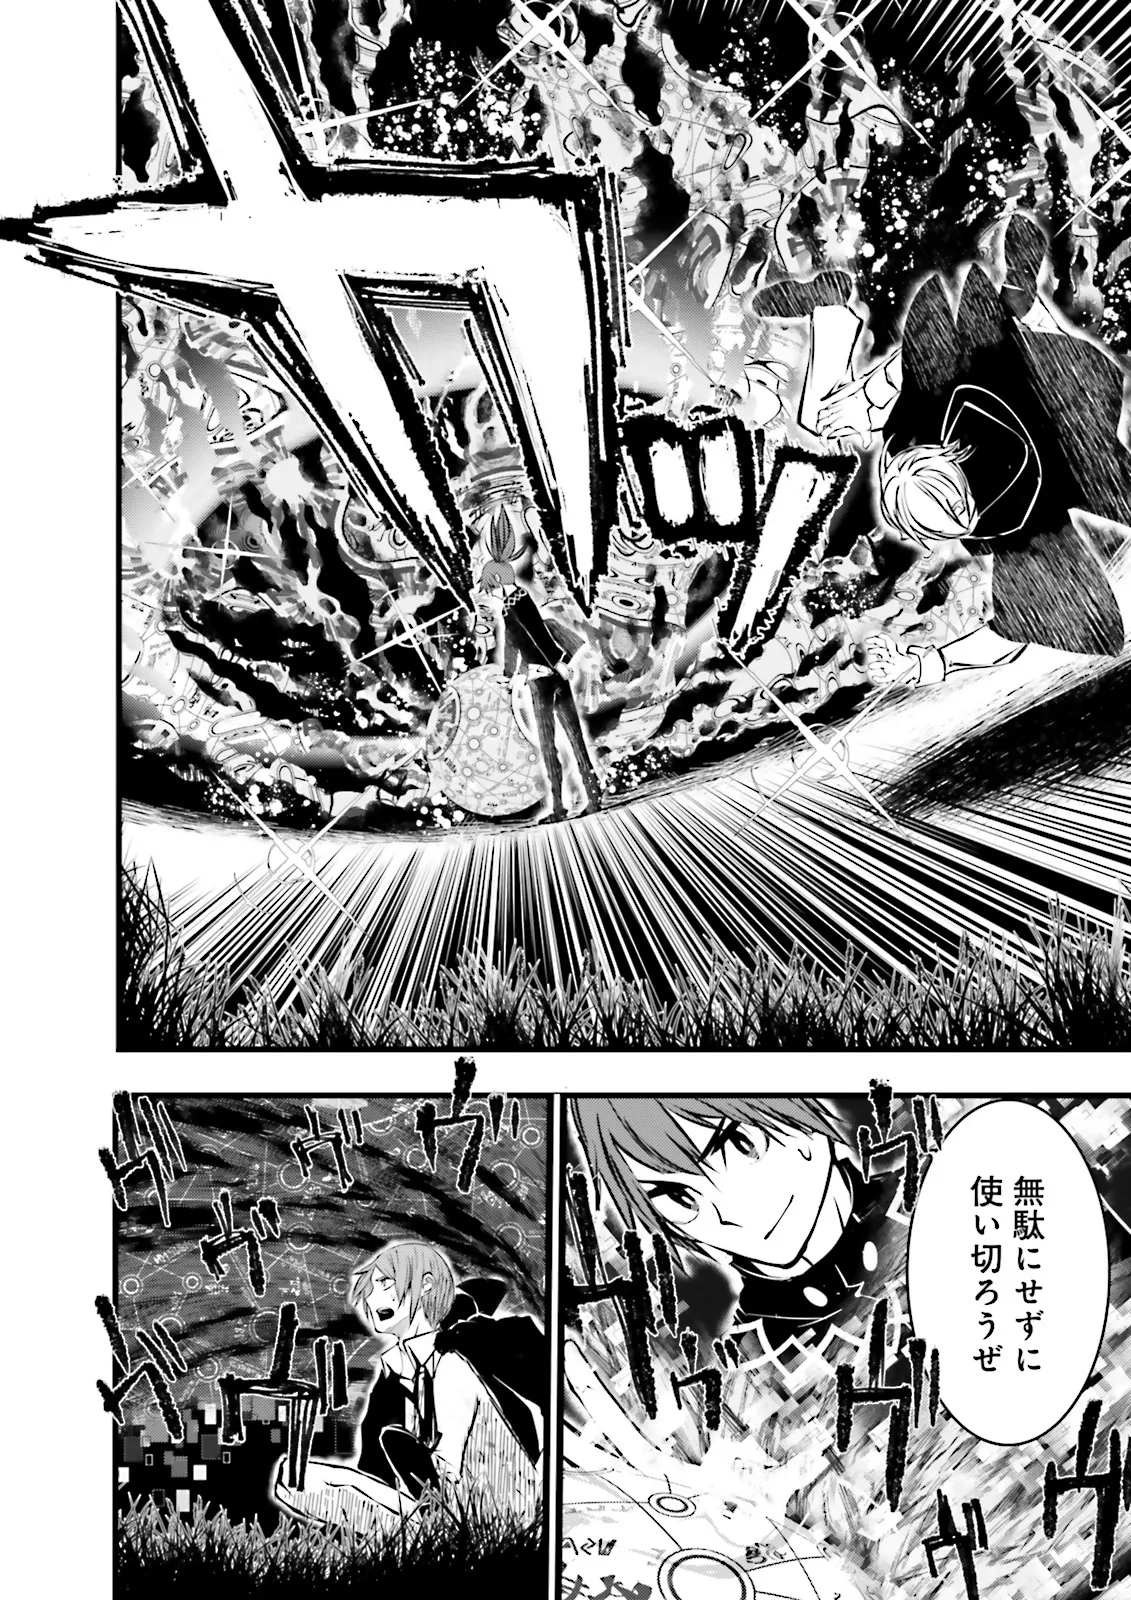 Sukiru Ga Nakereba Level wo Ageru ~ 99 Ga Kansuto No Sekai De Reberu 800 Man Kara Sutato ~ - Chapter 41.2 - Page 2